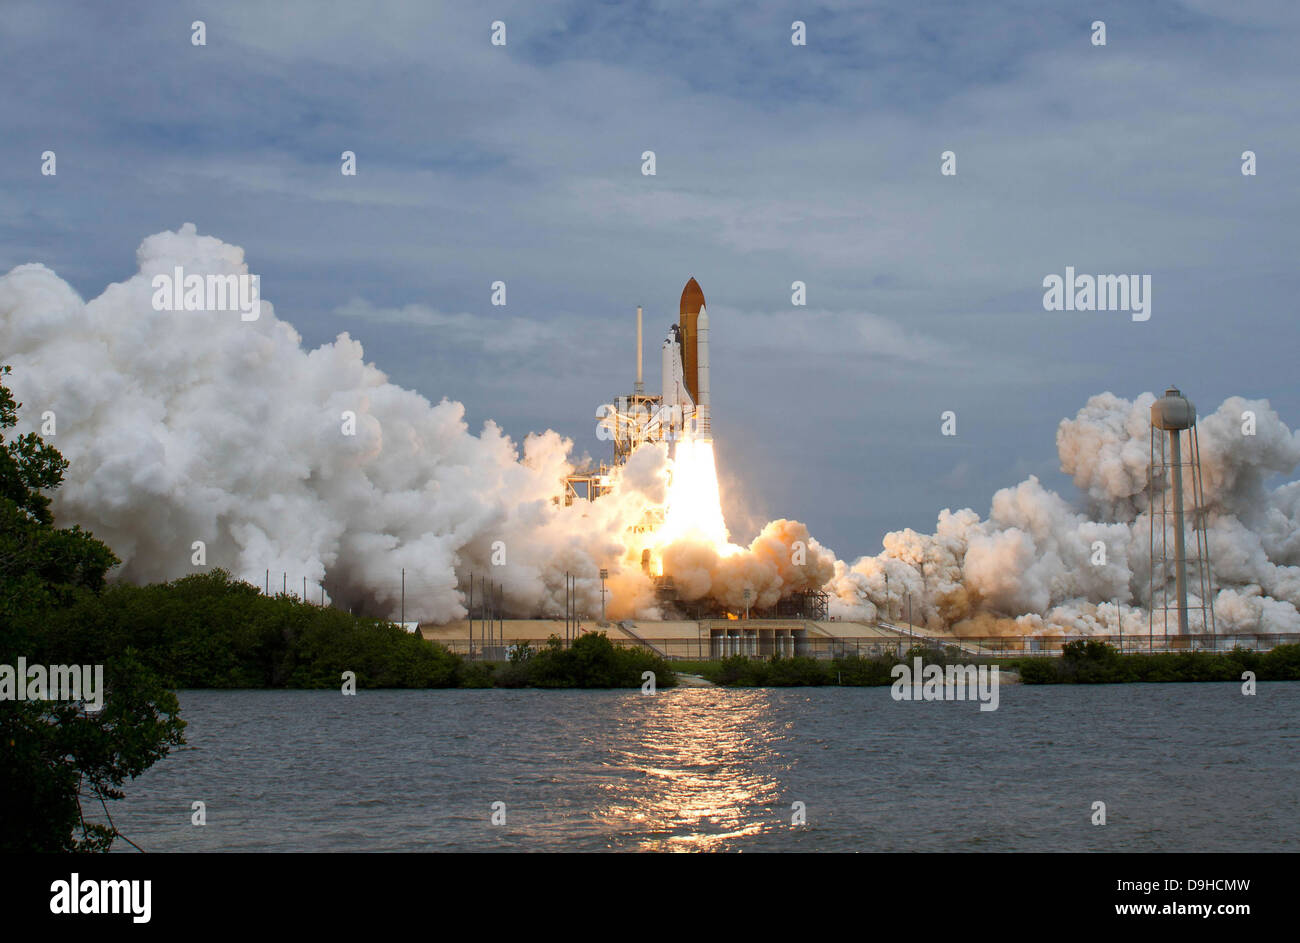 Transbordador Espacial Atlantis despega desde el Centro Espacial Kennedy, Florida. Foto de stock